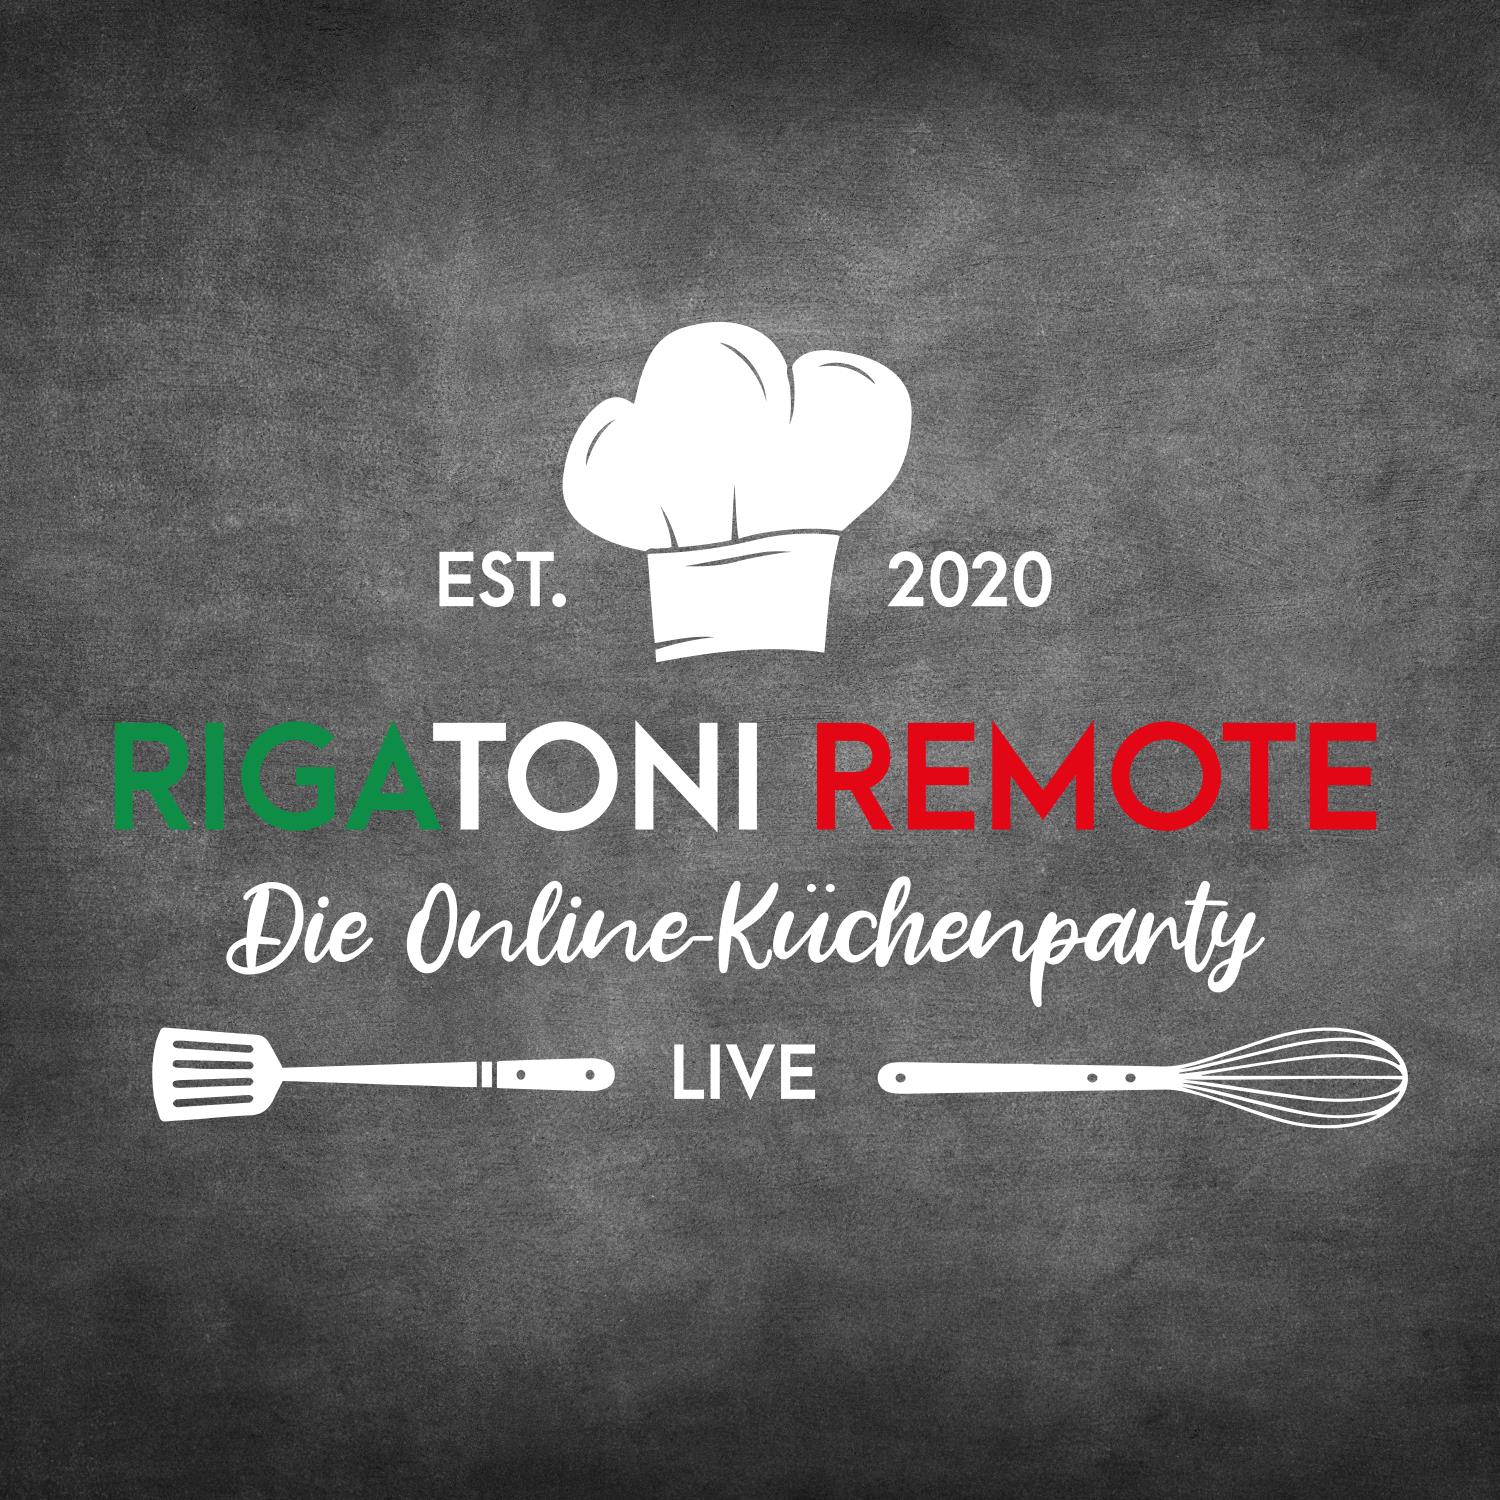 Rigatoni Remote – Die Online-Küchenparty